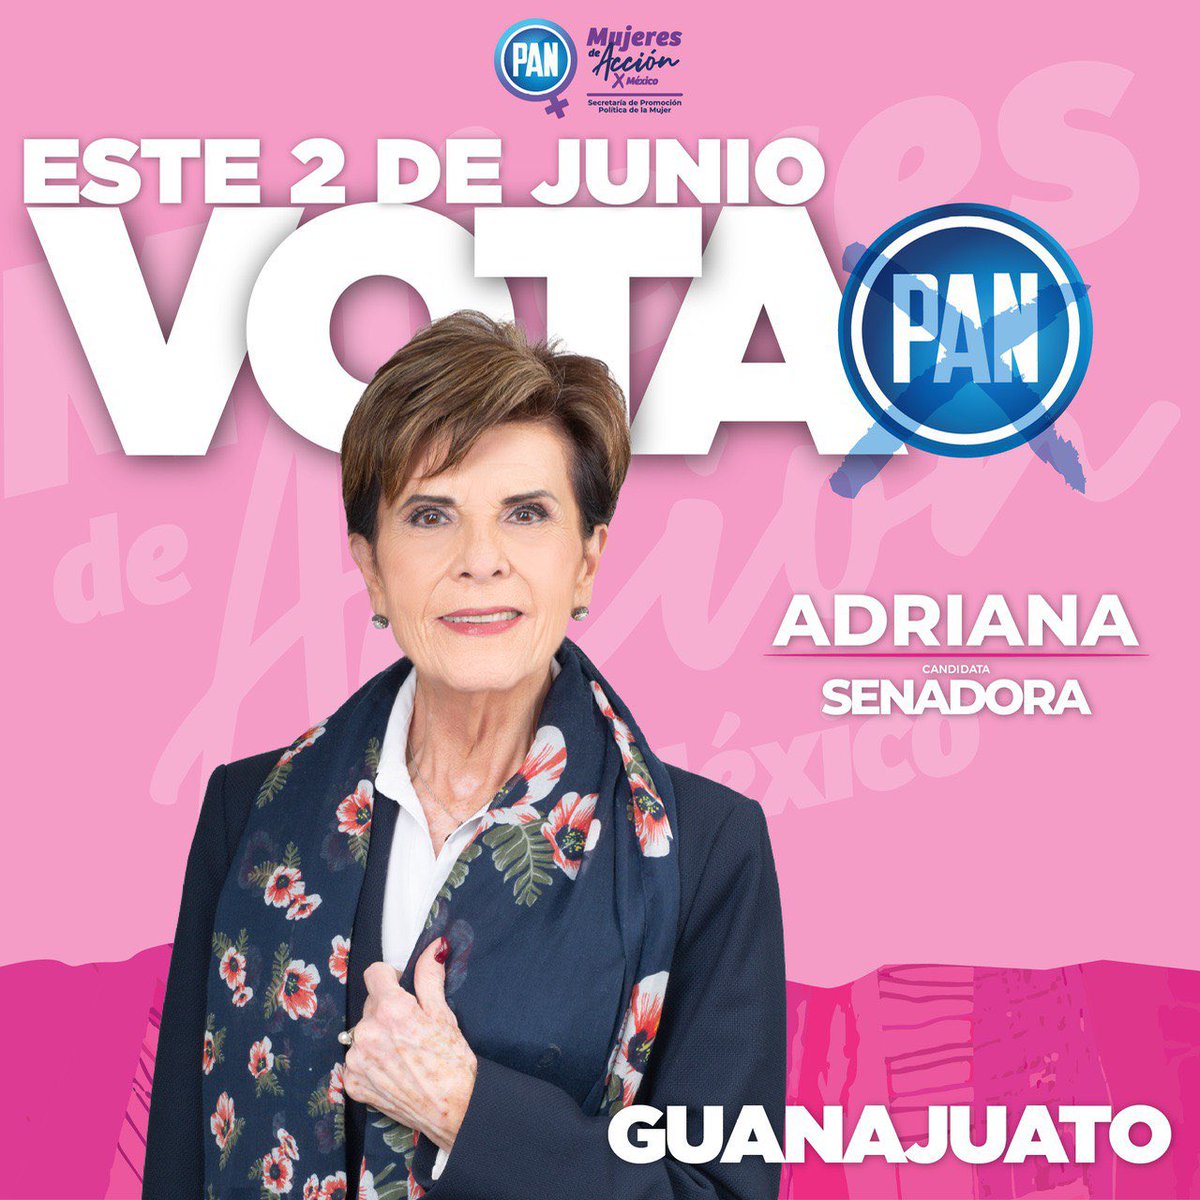 Este próximo 2 de junio vota por nuestra candidata a senadora en #Guanajuato @AdrianaRdzViz
#LlegóLaHoraDeAvanzar #mujeres #ClaroQuePodemos #VotaPAN #AdrianaCandidataAlSenado
#VotaPAN 💙